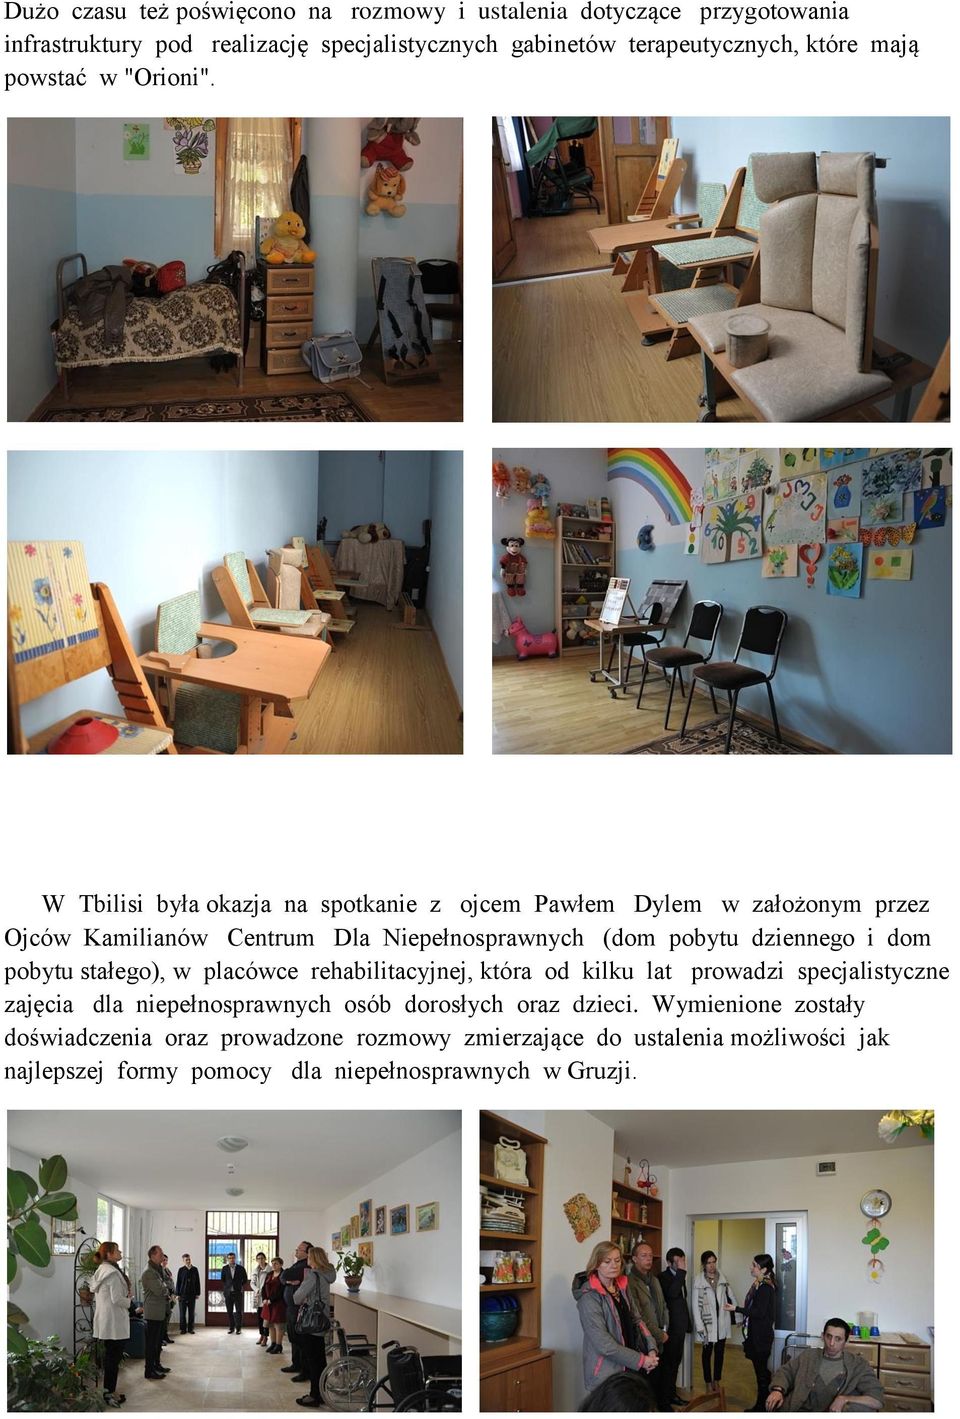 W Tbilisi była okazja na spotkanie z ojcem Pawłem Dylem w założonym przez Ojców Kamilianów Centrum Dla Niepełnosprawnych (dom pobytu dziennego i dom pobytu